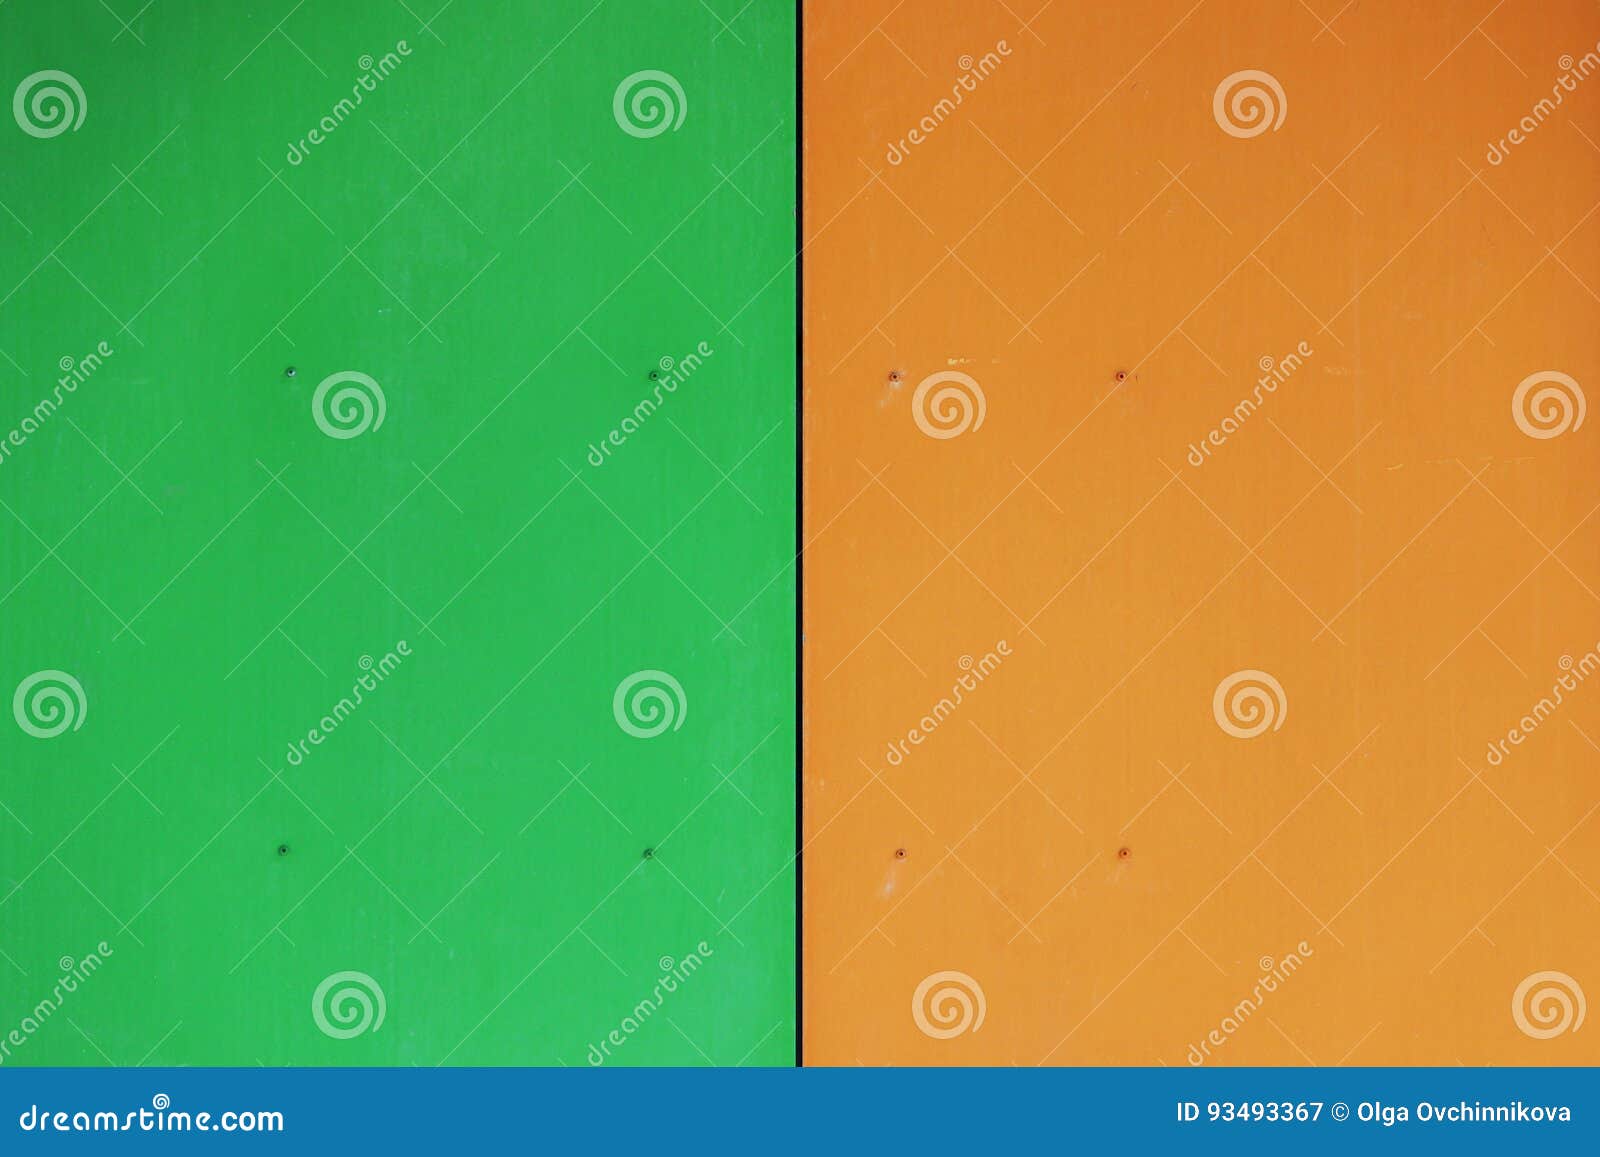 Naranja y verde que color da